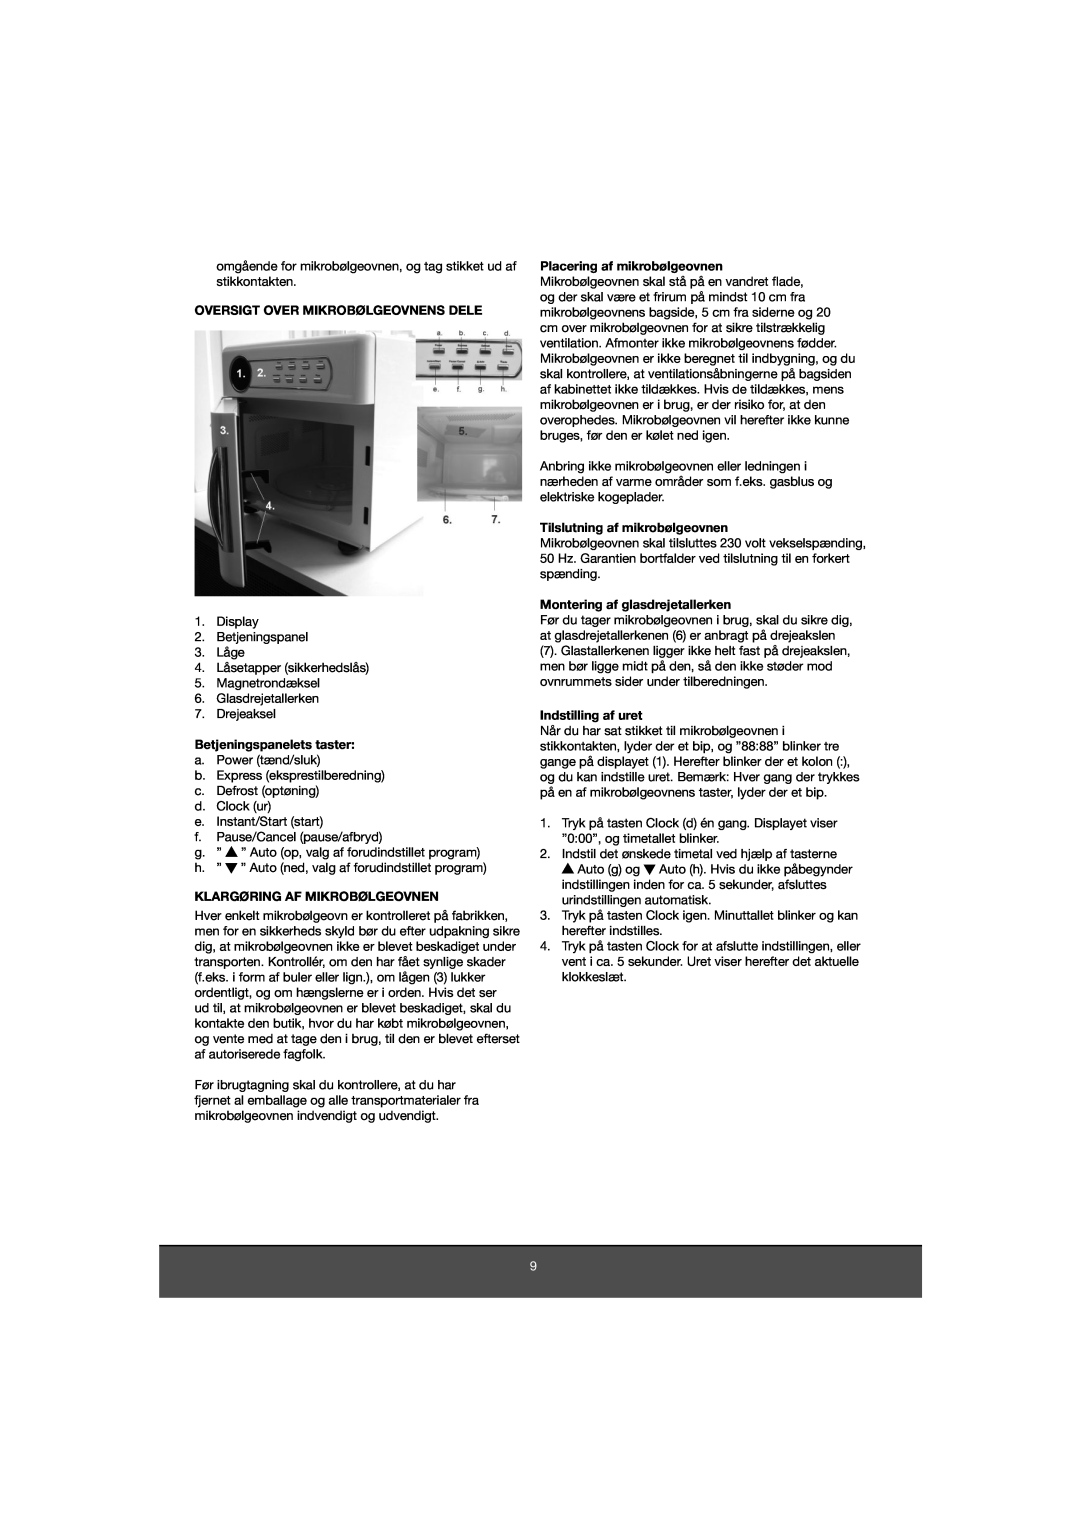 Melissa 653-081 manual Oversigt Over Mikrobølgeovnens Dele, Betjeningspanelets taster, Klargøring Af Mikrobølgeovnen 